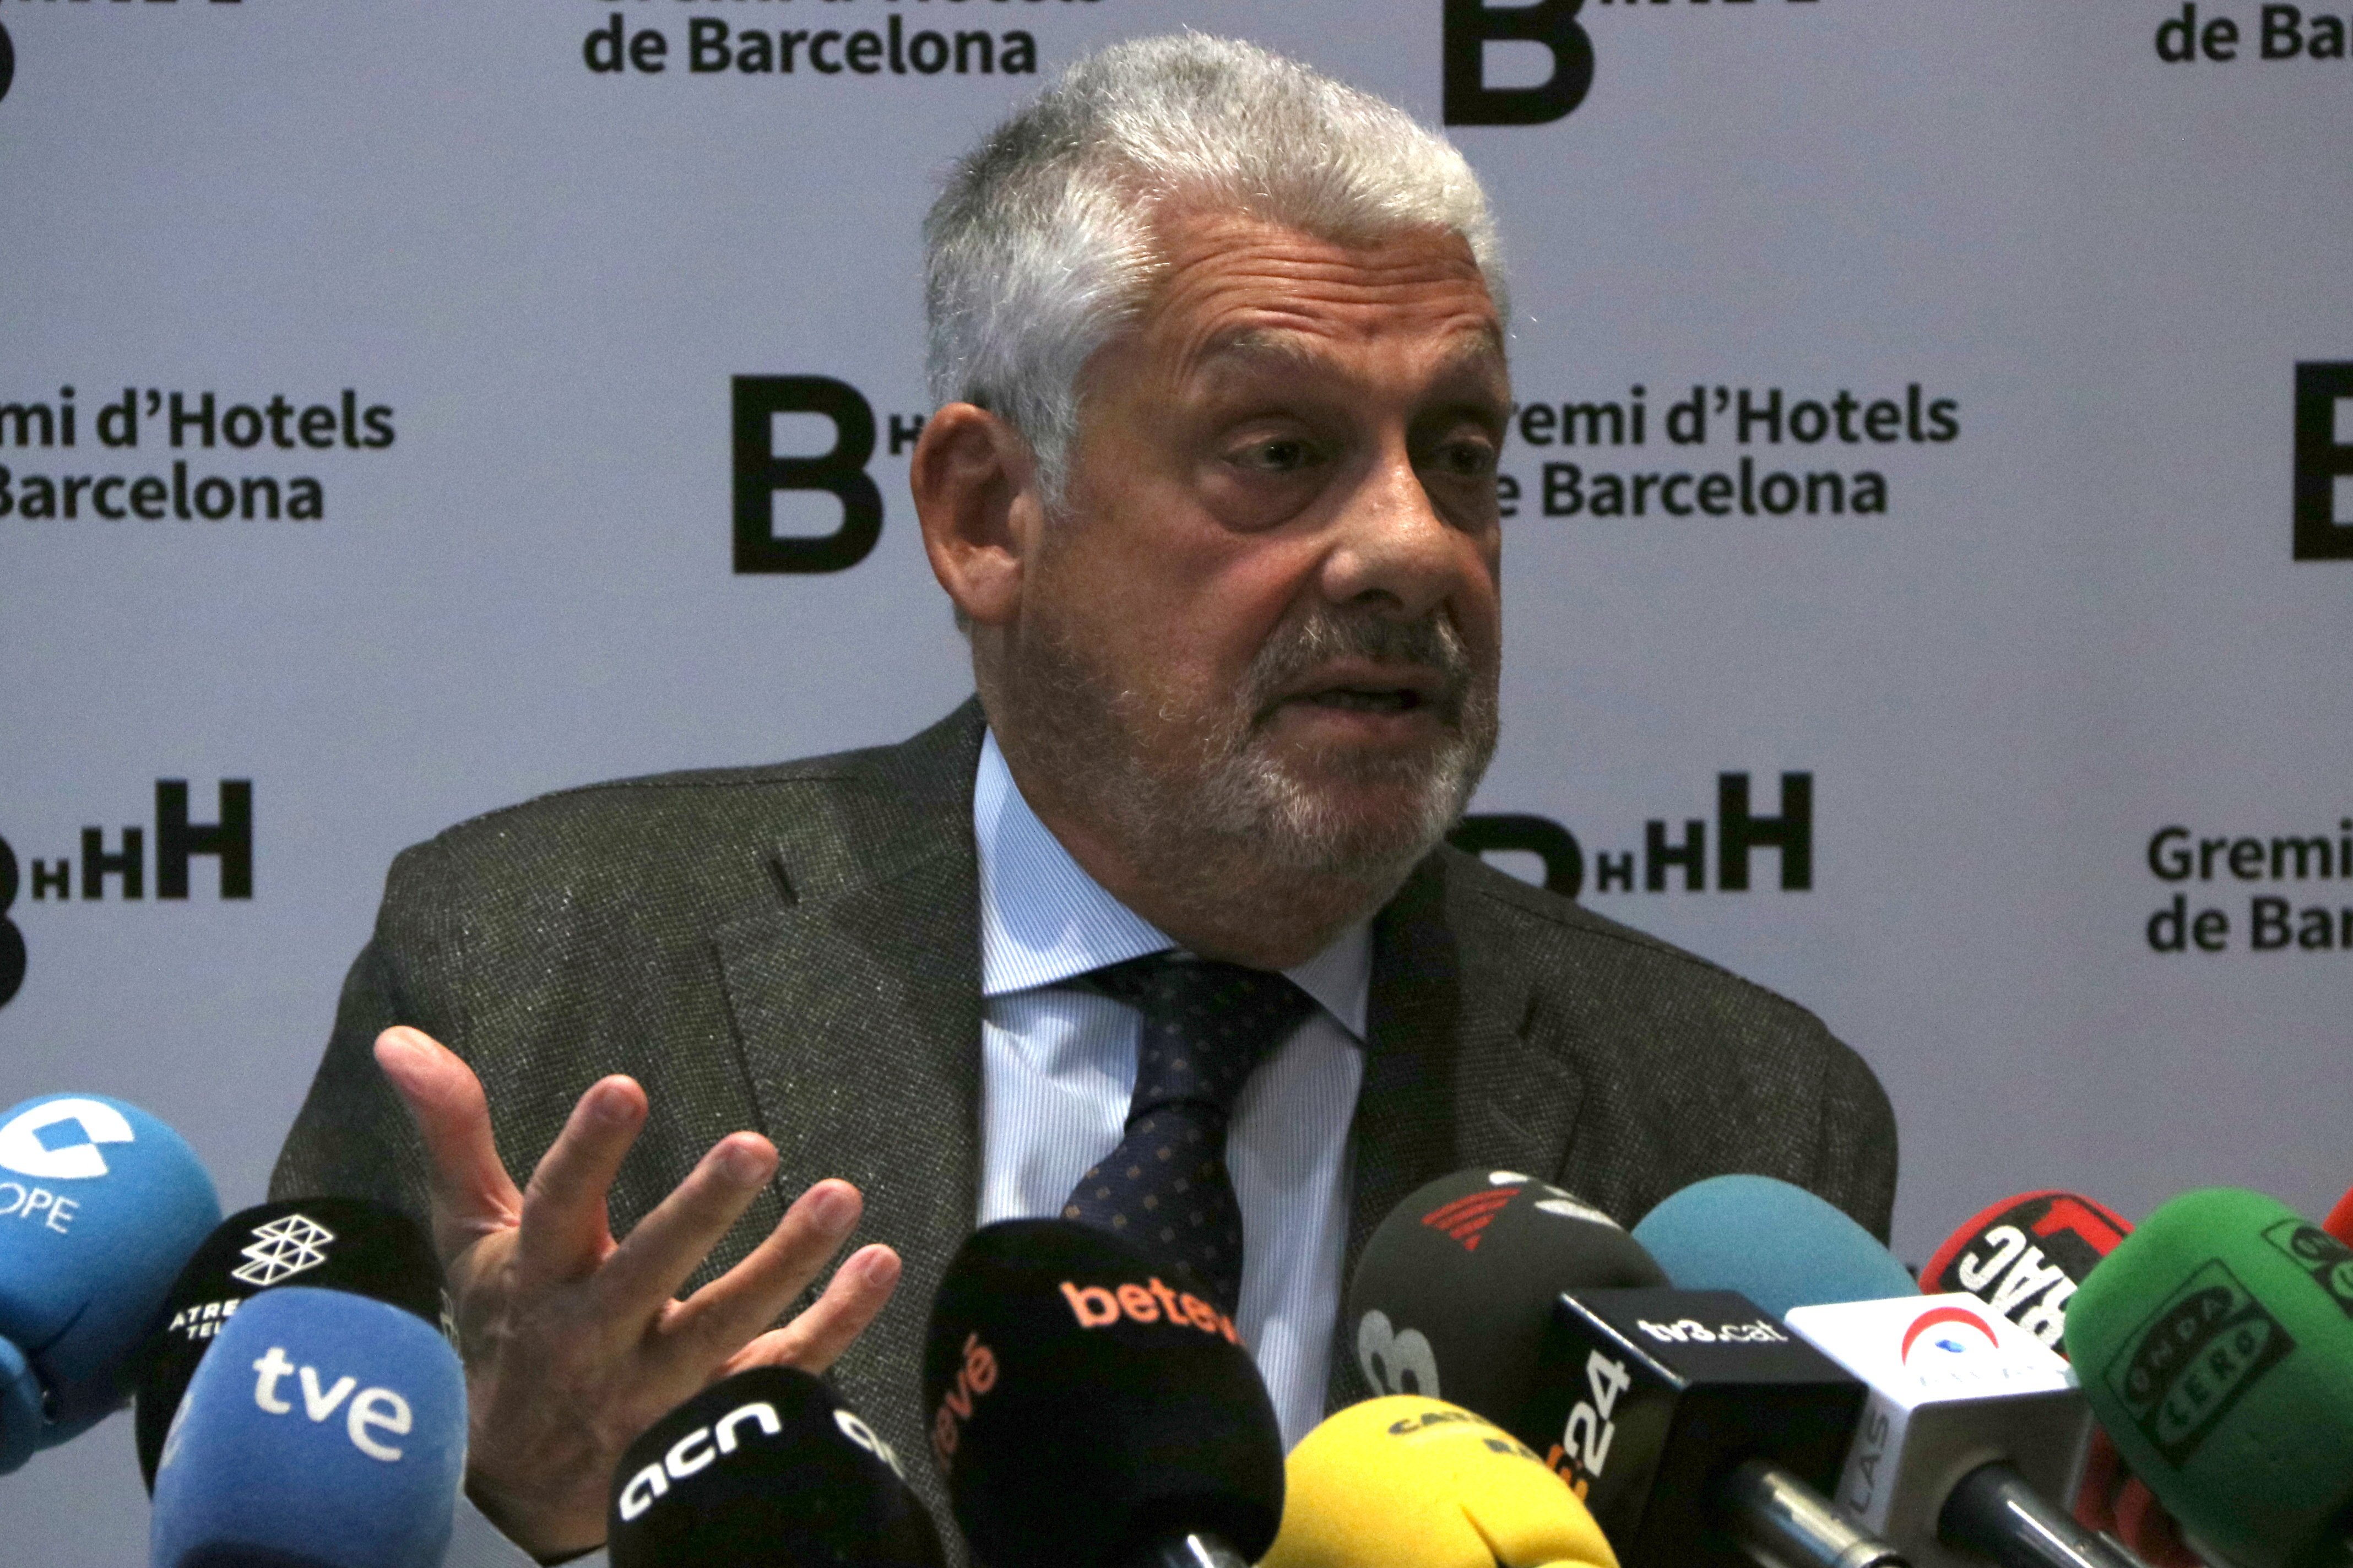 El Gremi d'Hotels urge a frenar el descenso de turistas en Barcelona